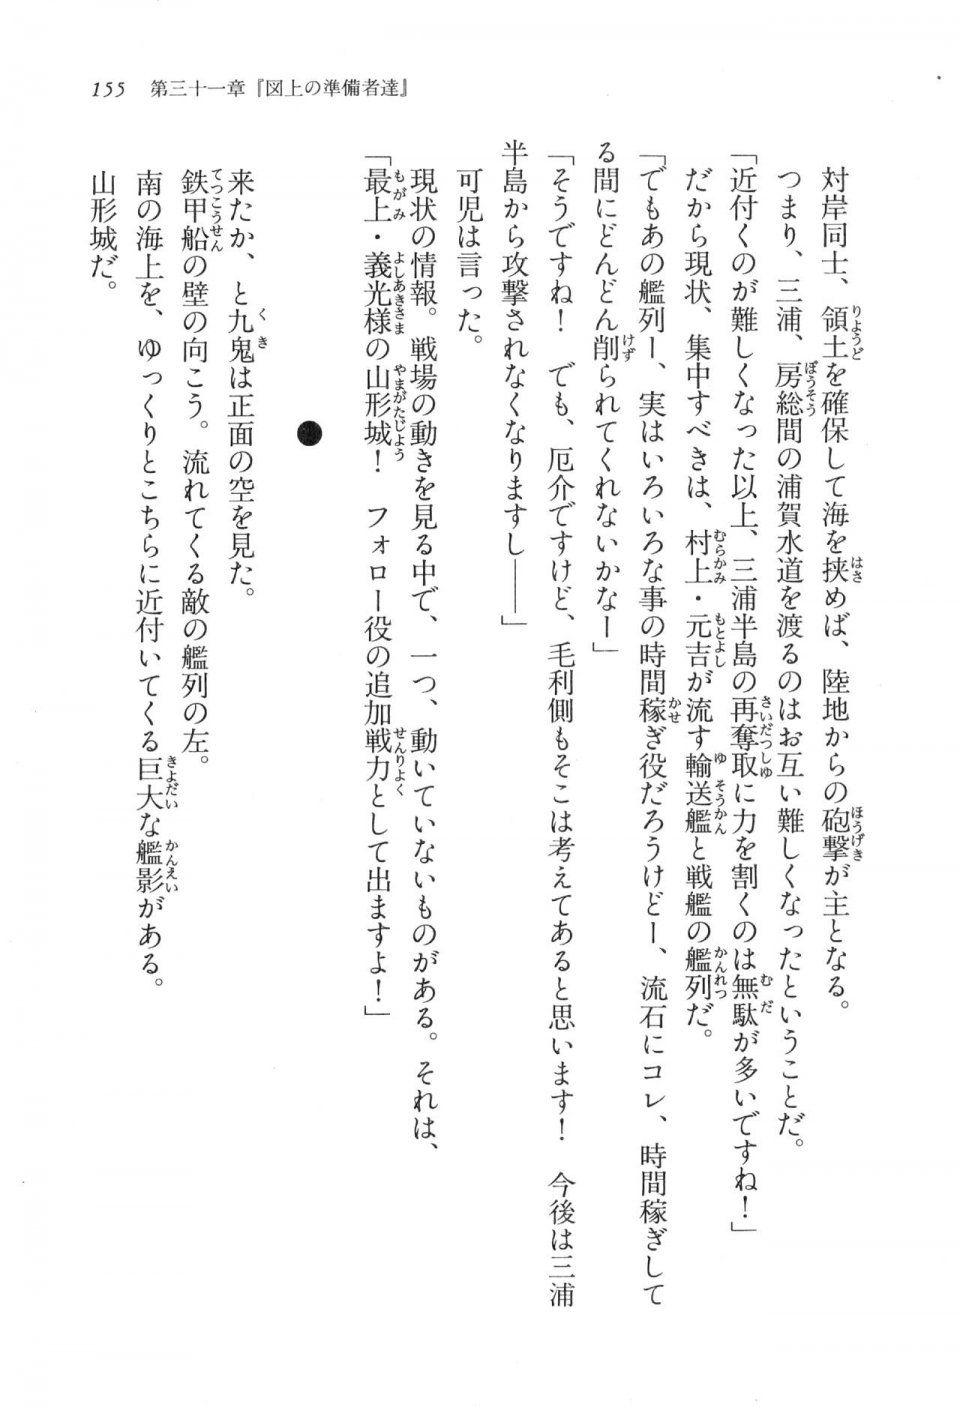 Kyoukai Senjou no Horizon LN Vol 17(7B) - Photo #155